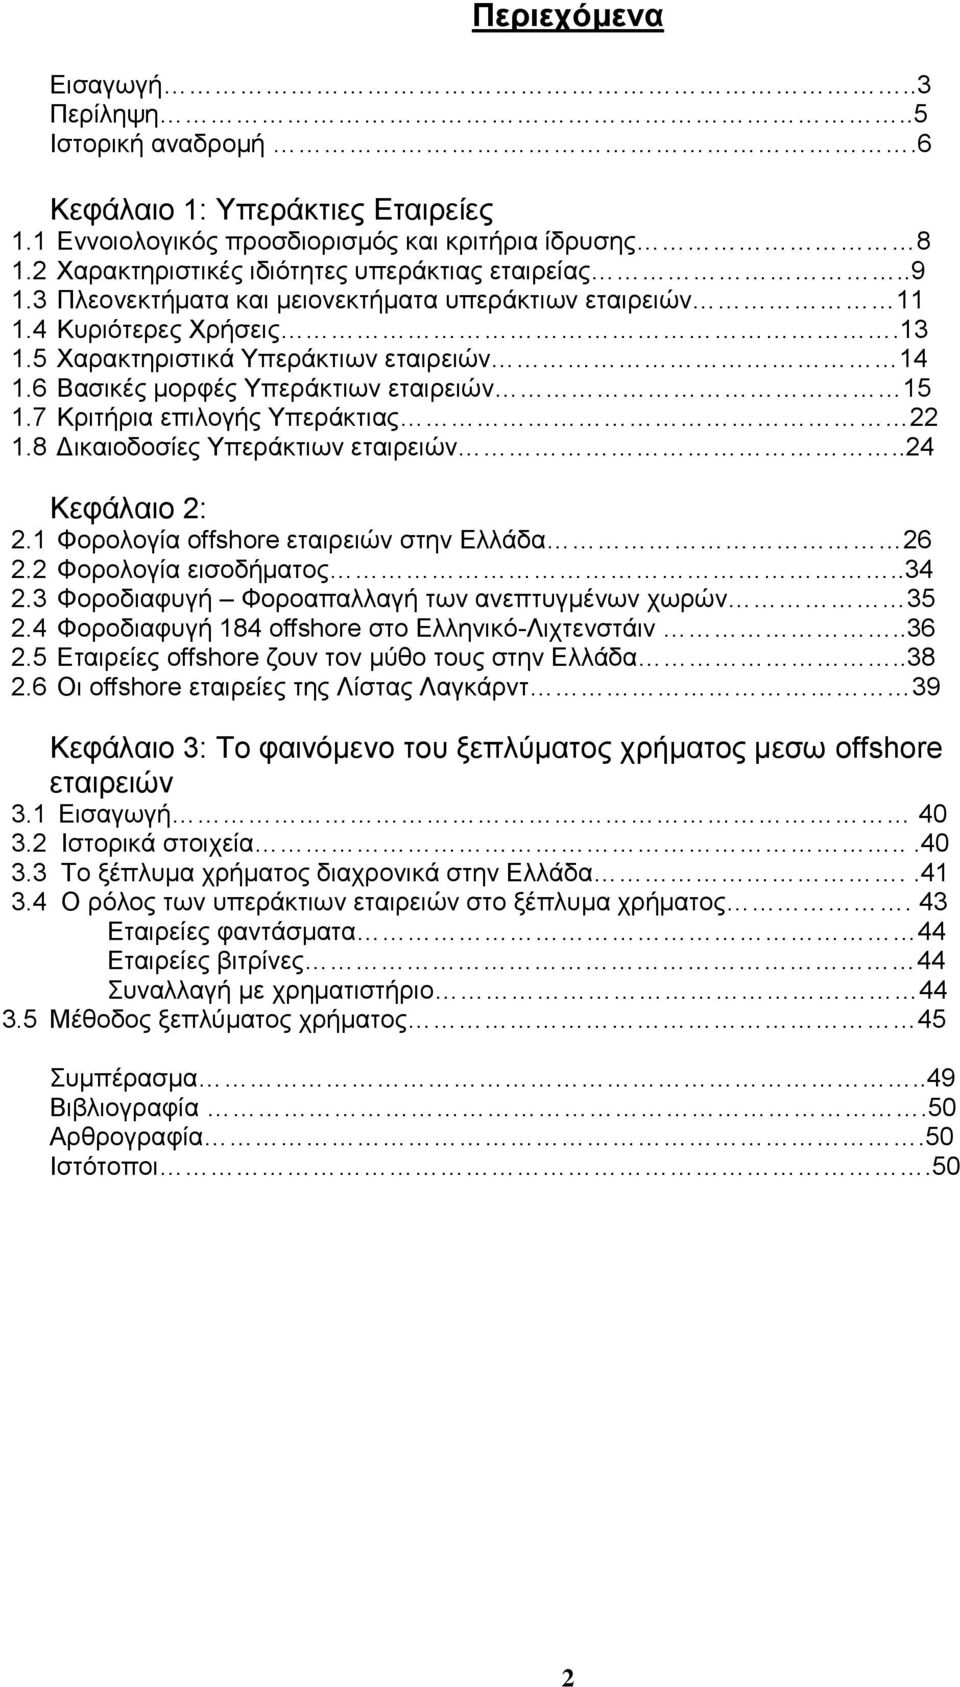 7 Κριτήρια επιλογής Υπεράκτιας 22 1.8 Δικαιοδοσίες Υπεράκτιων εταιρειών..24 Κεφάλαιο 2: 2.1 Φορολογία offshore εταιρειών στην Ελλάδα 26 2.2 Φορολογία εισοδήματος..34 2.